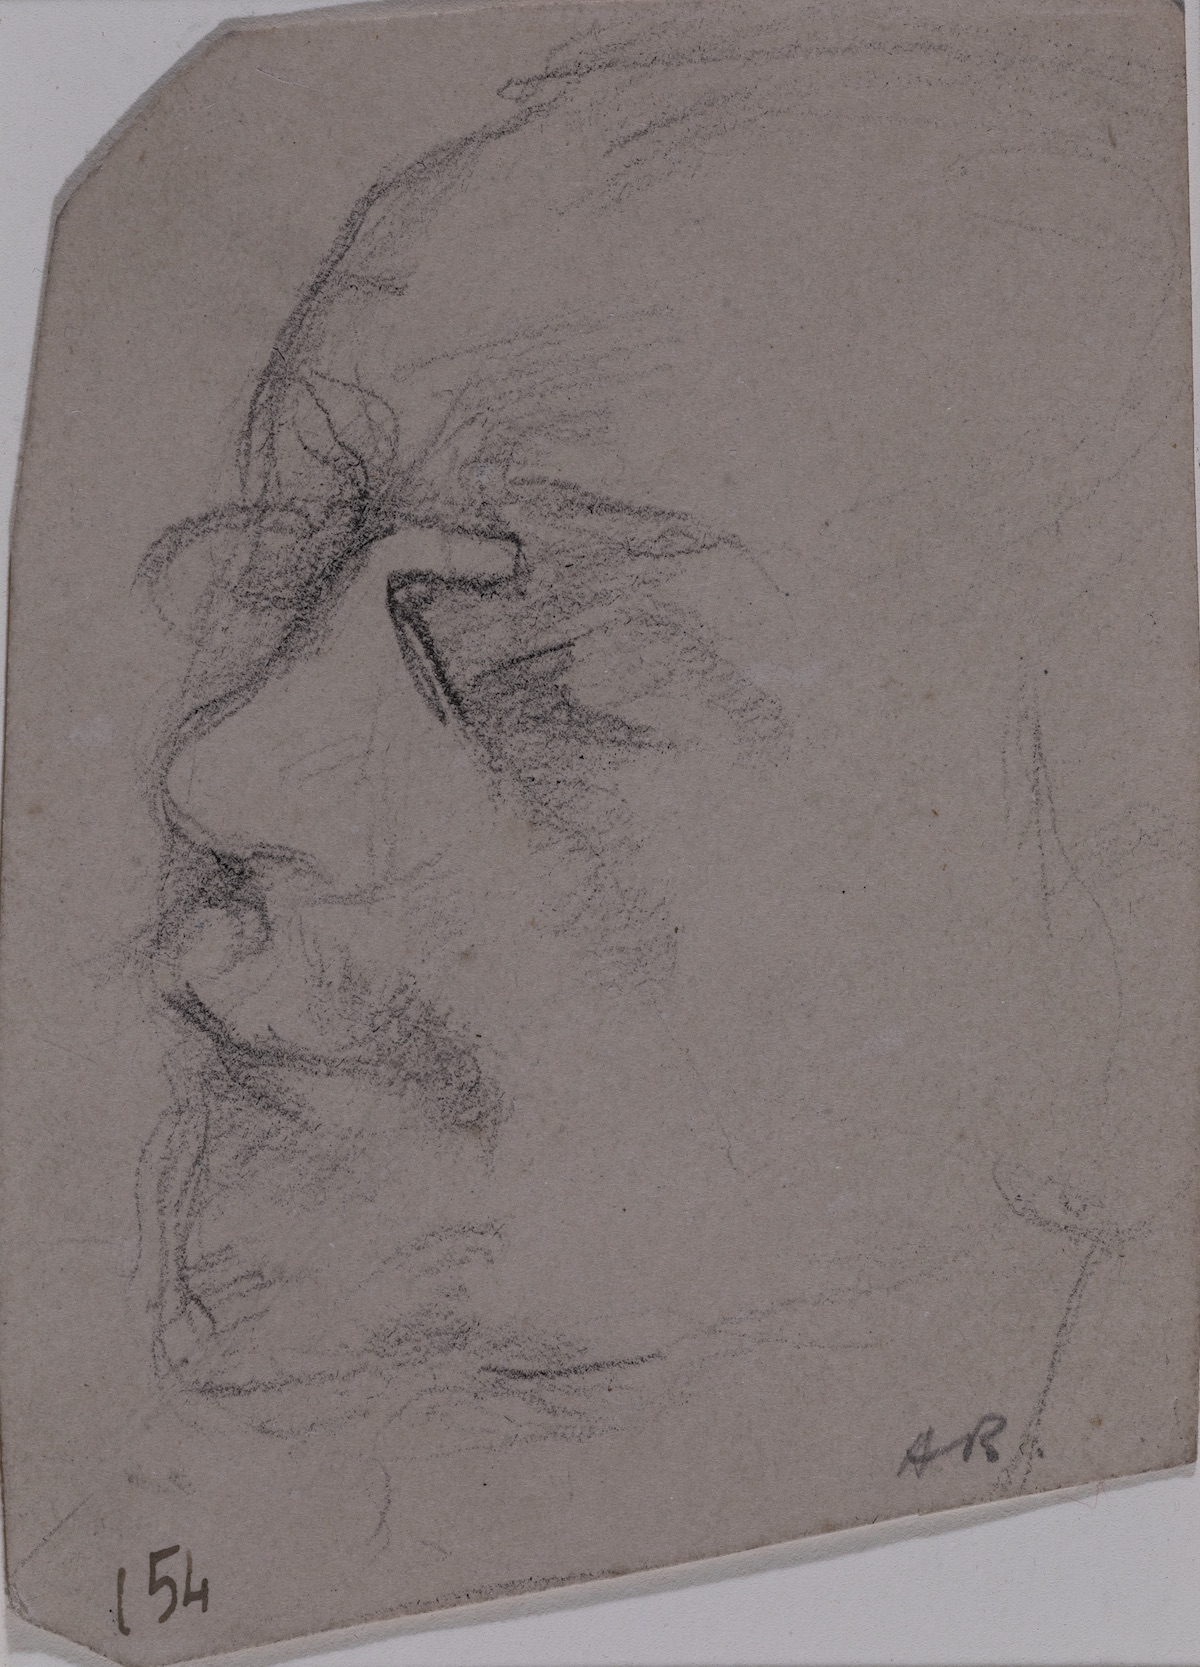 Portrait of the head of Henri de Toulouse-Lautrec wearing glasses